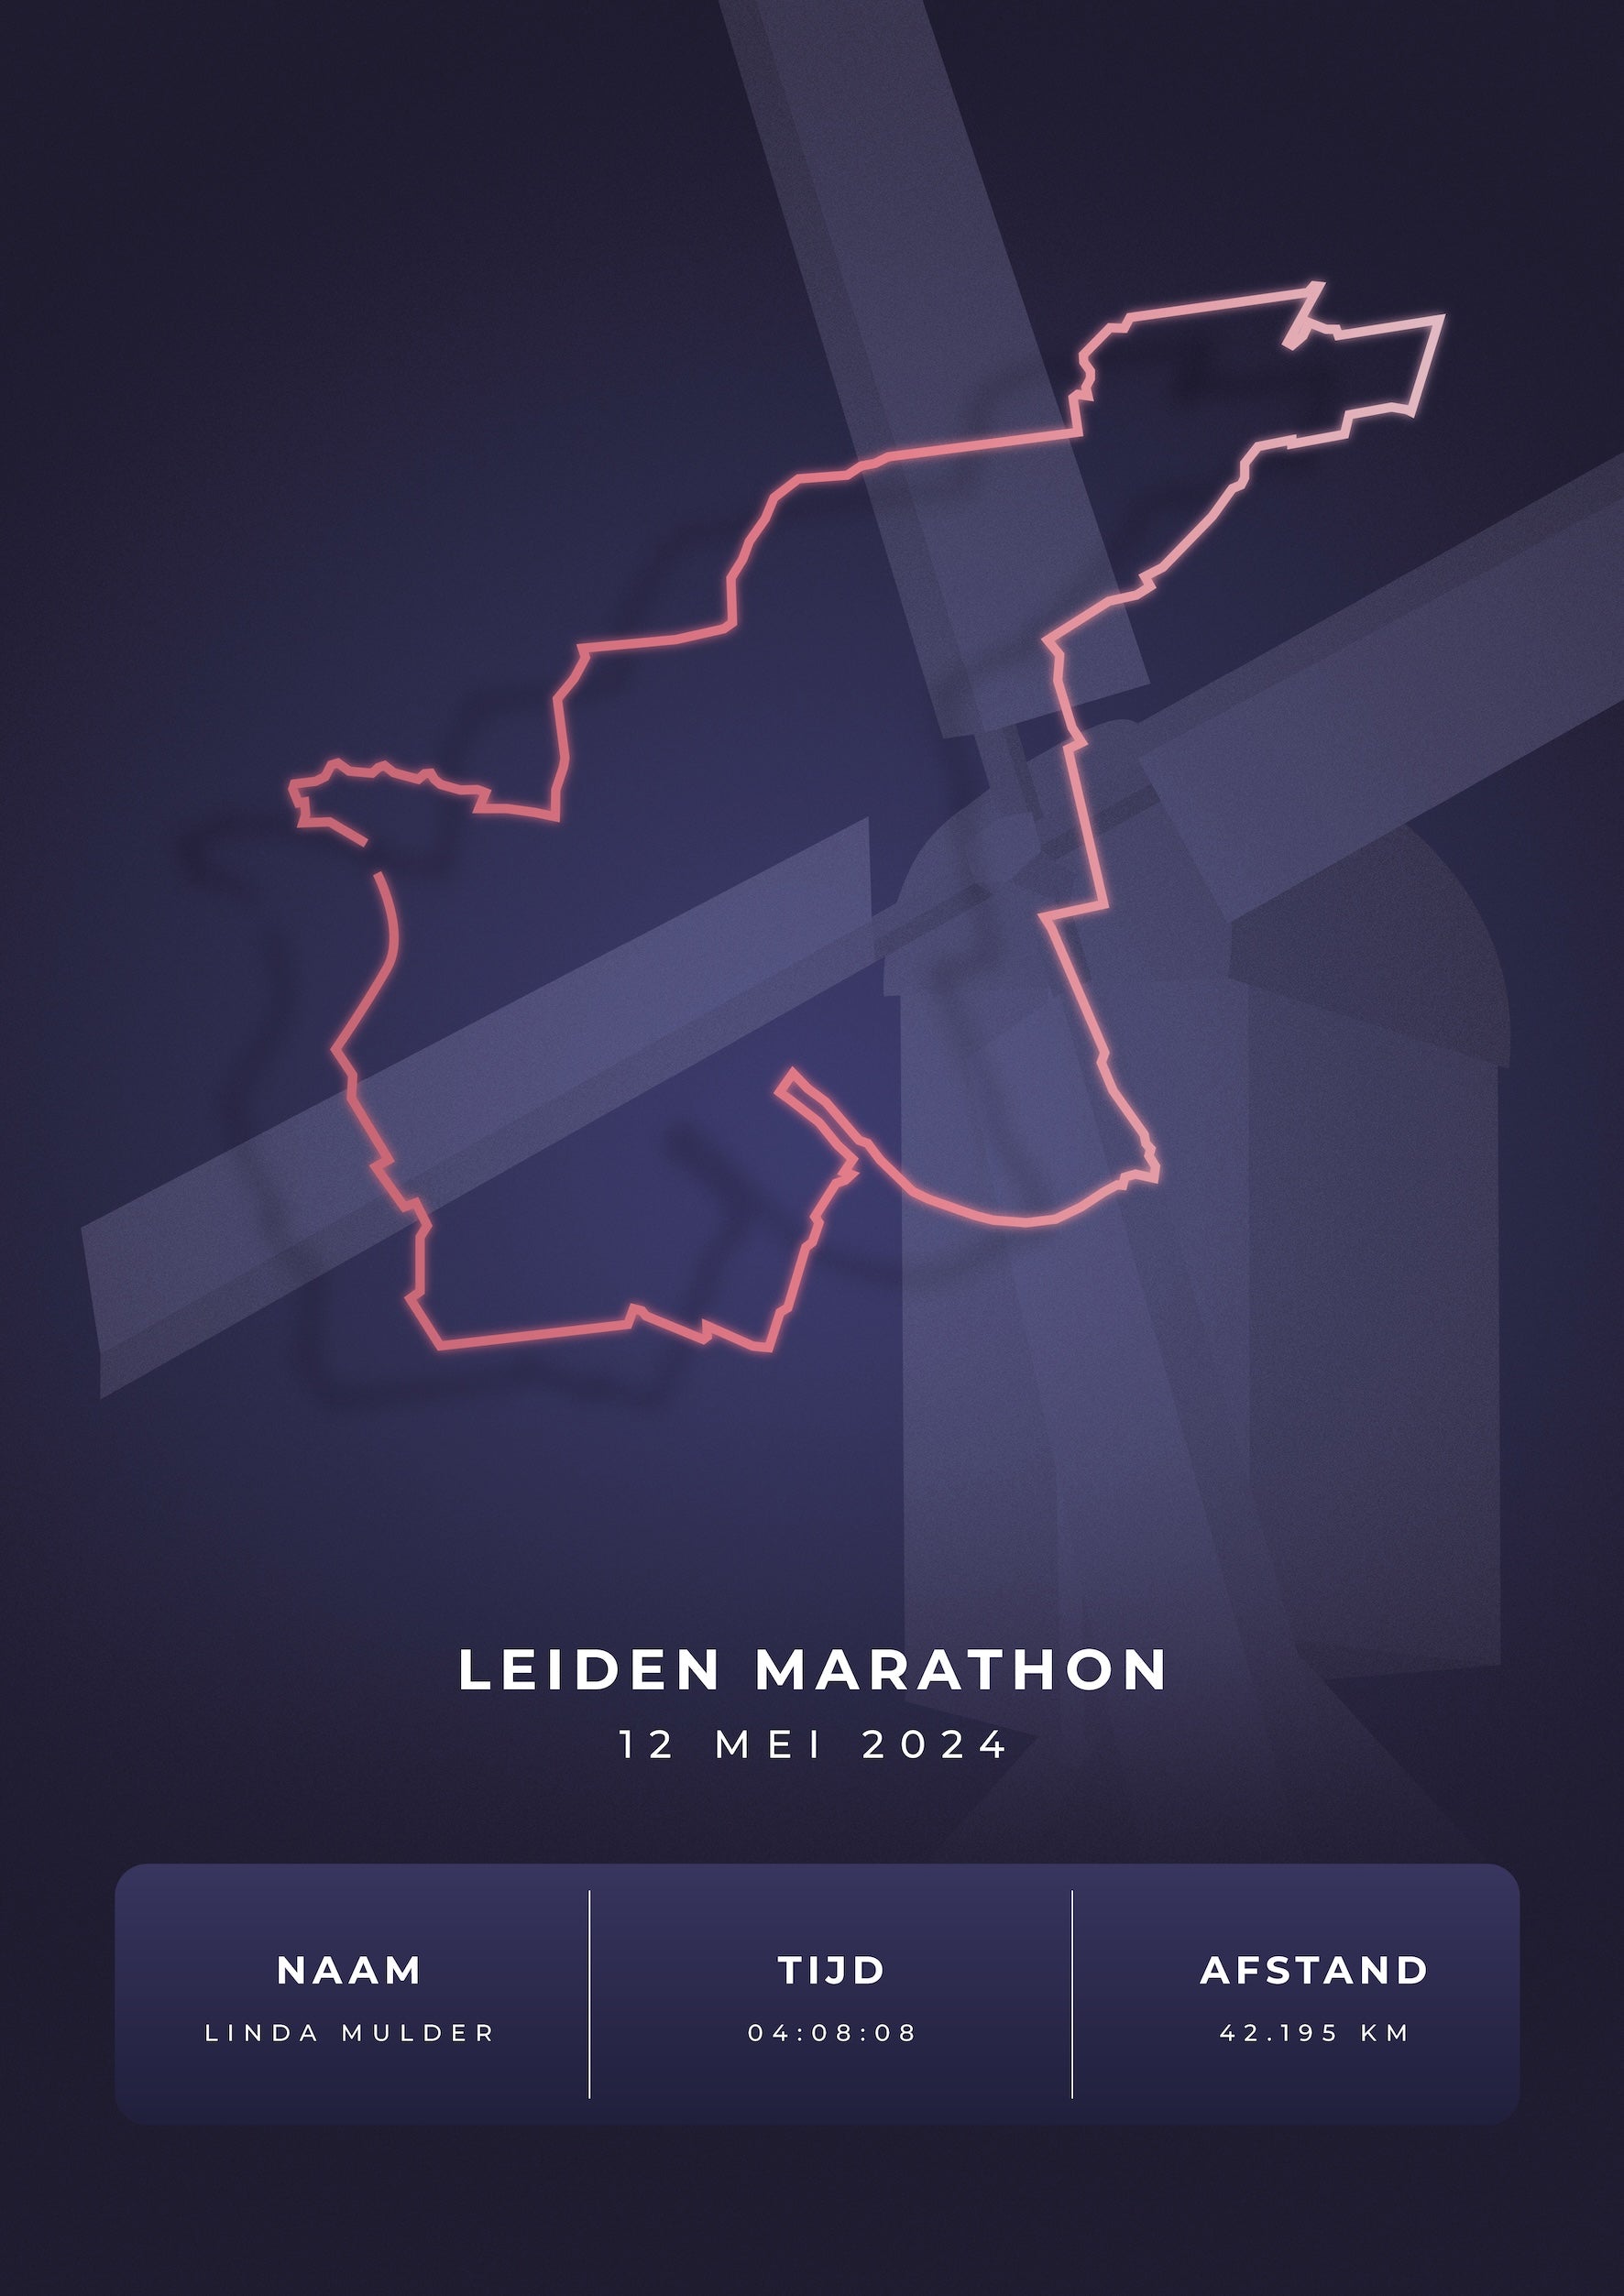 Leiden Marathon - Stylish Landmark - Poster